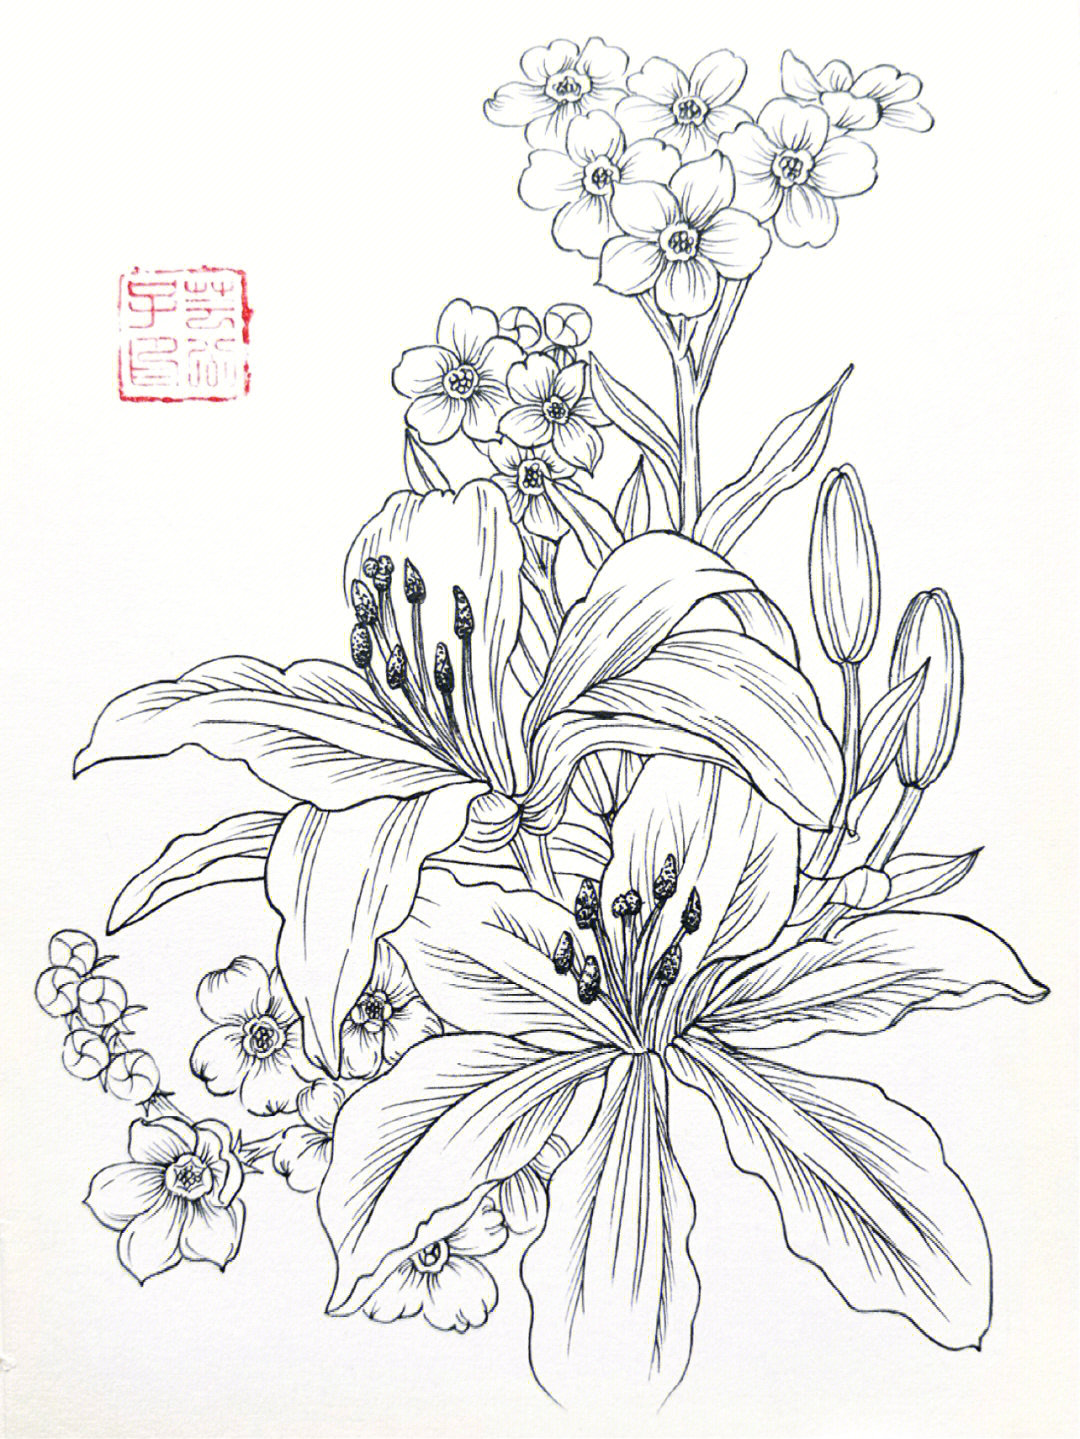 手绘教程针管笔画白描花卉每日一画